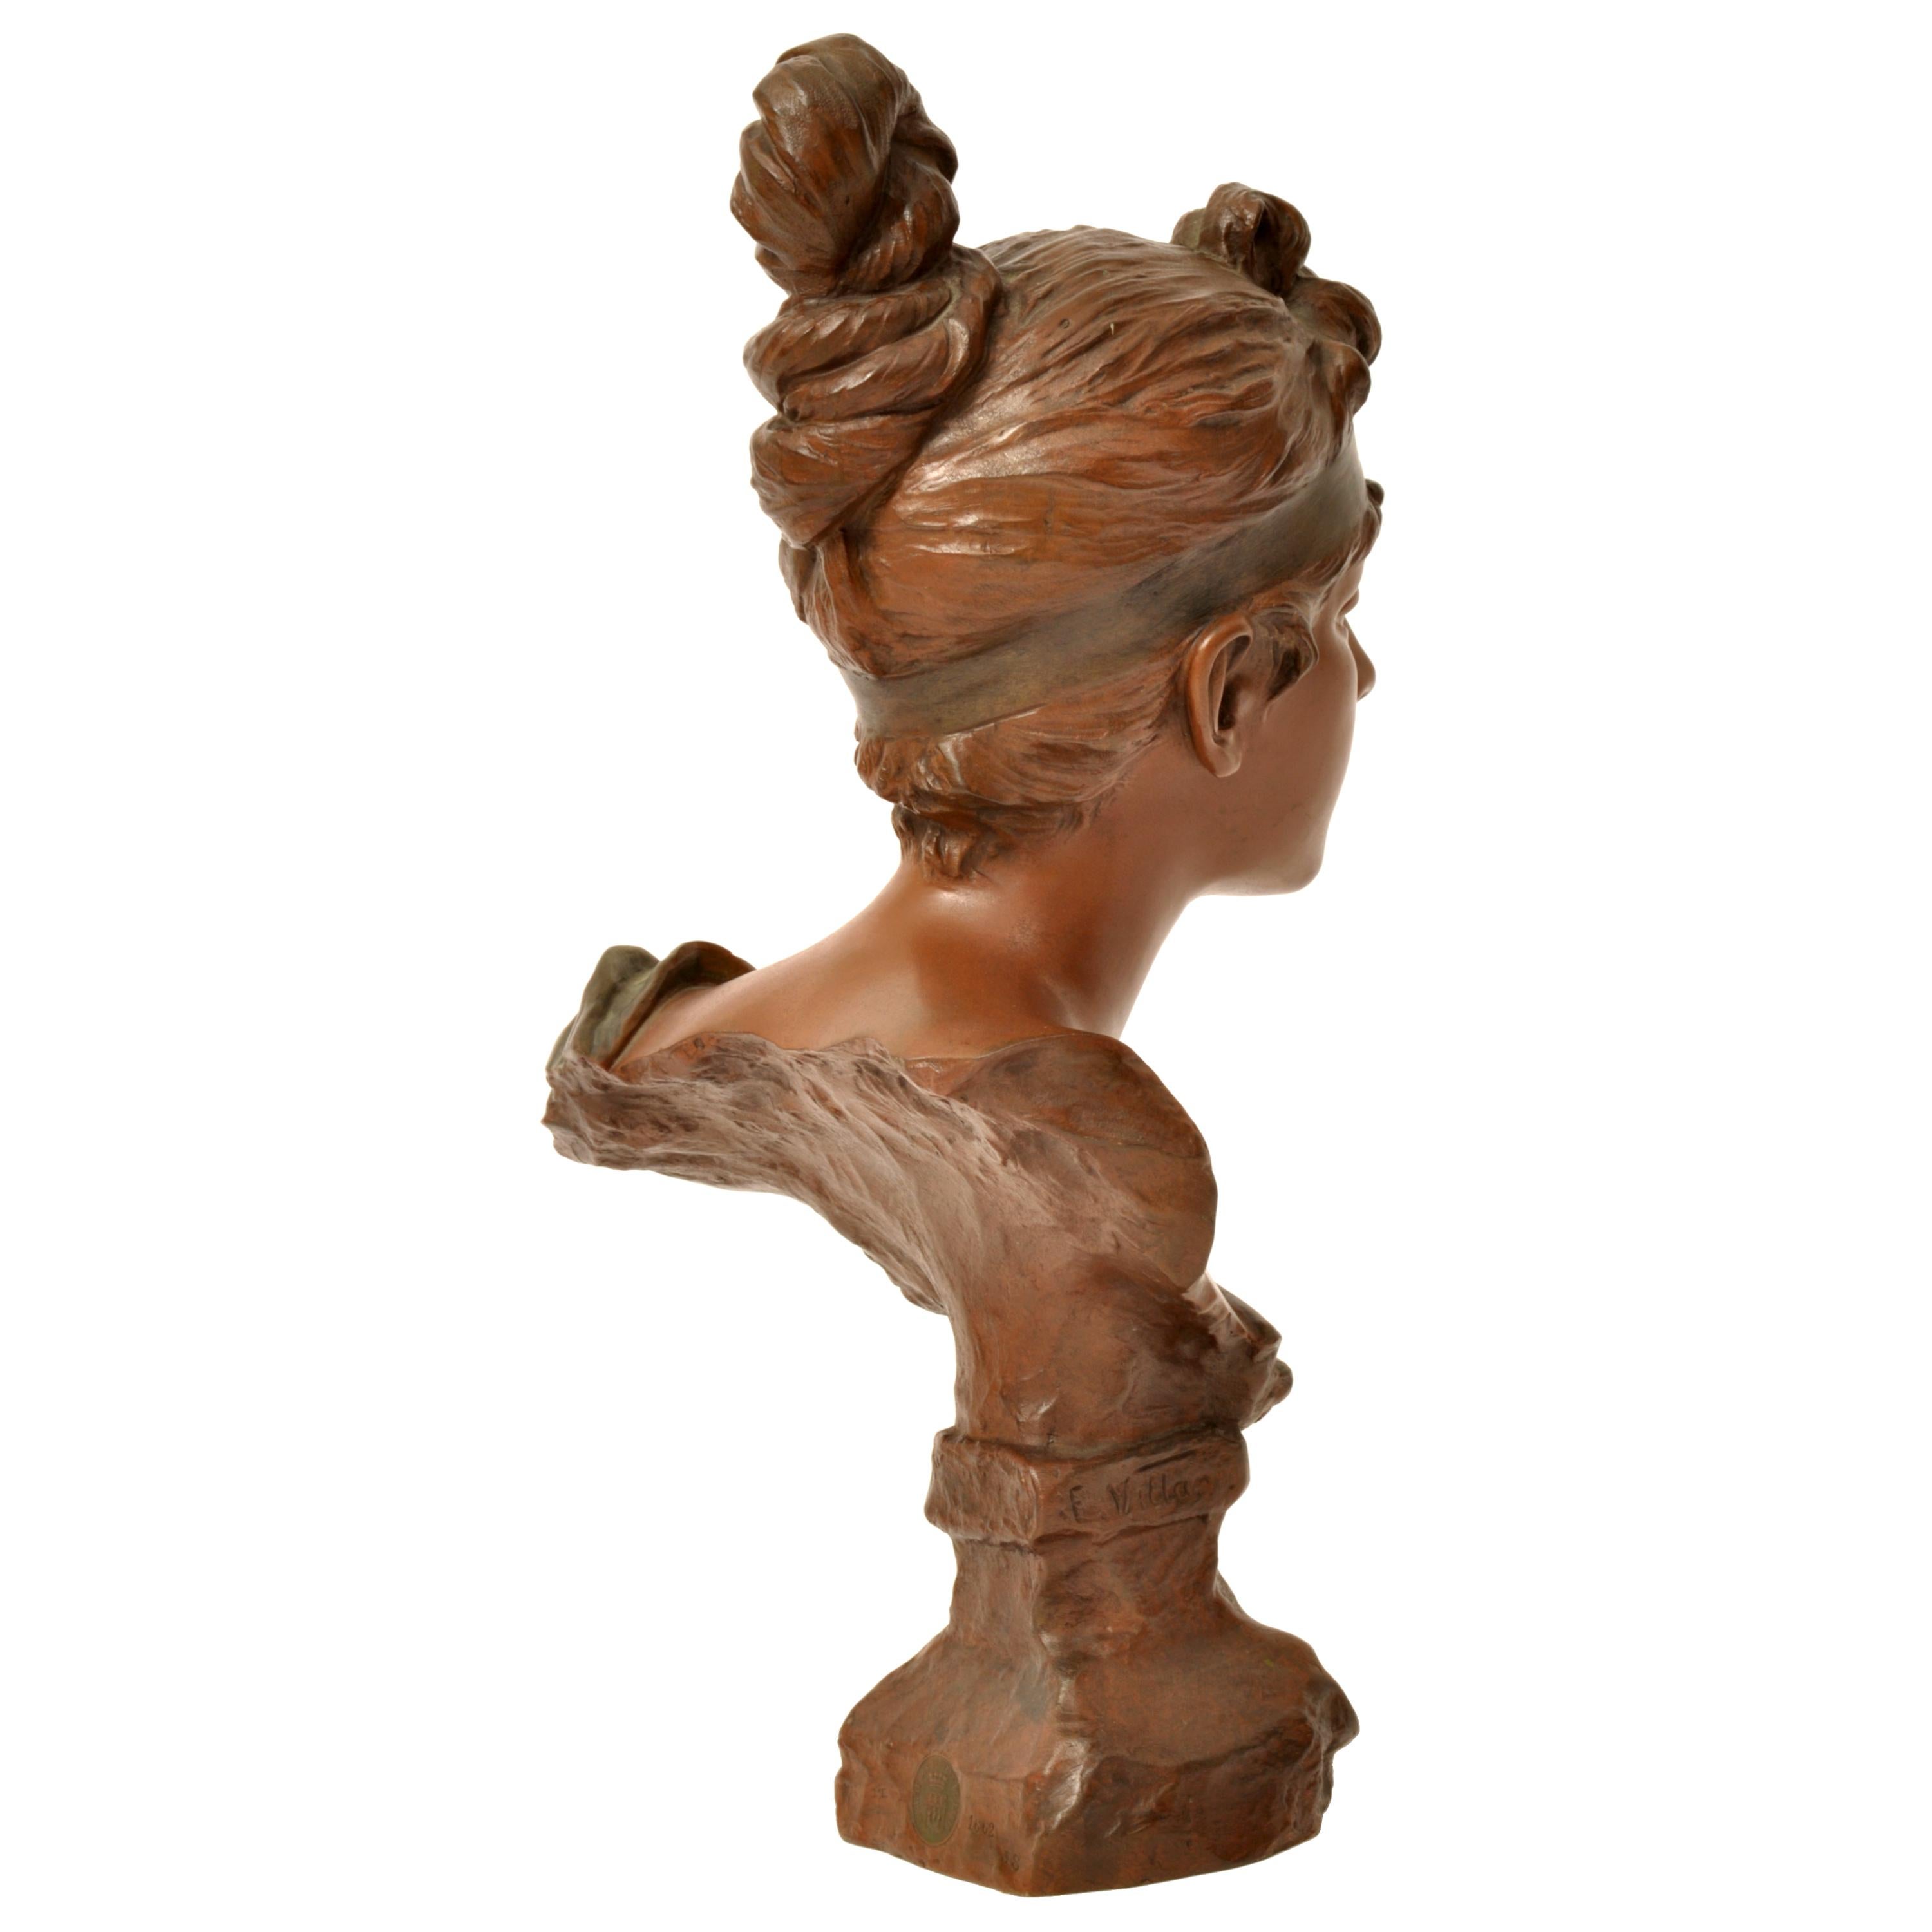 Antike Jugendstil-Bronze eines schönen Mädchens im neoklassizistischen Stil von Emmanuel Villanis, um 1900.
Die Bronze mit dem Titel 